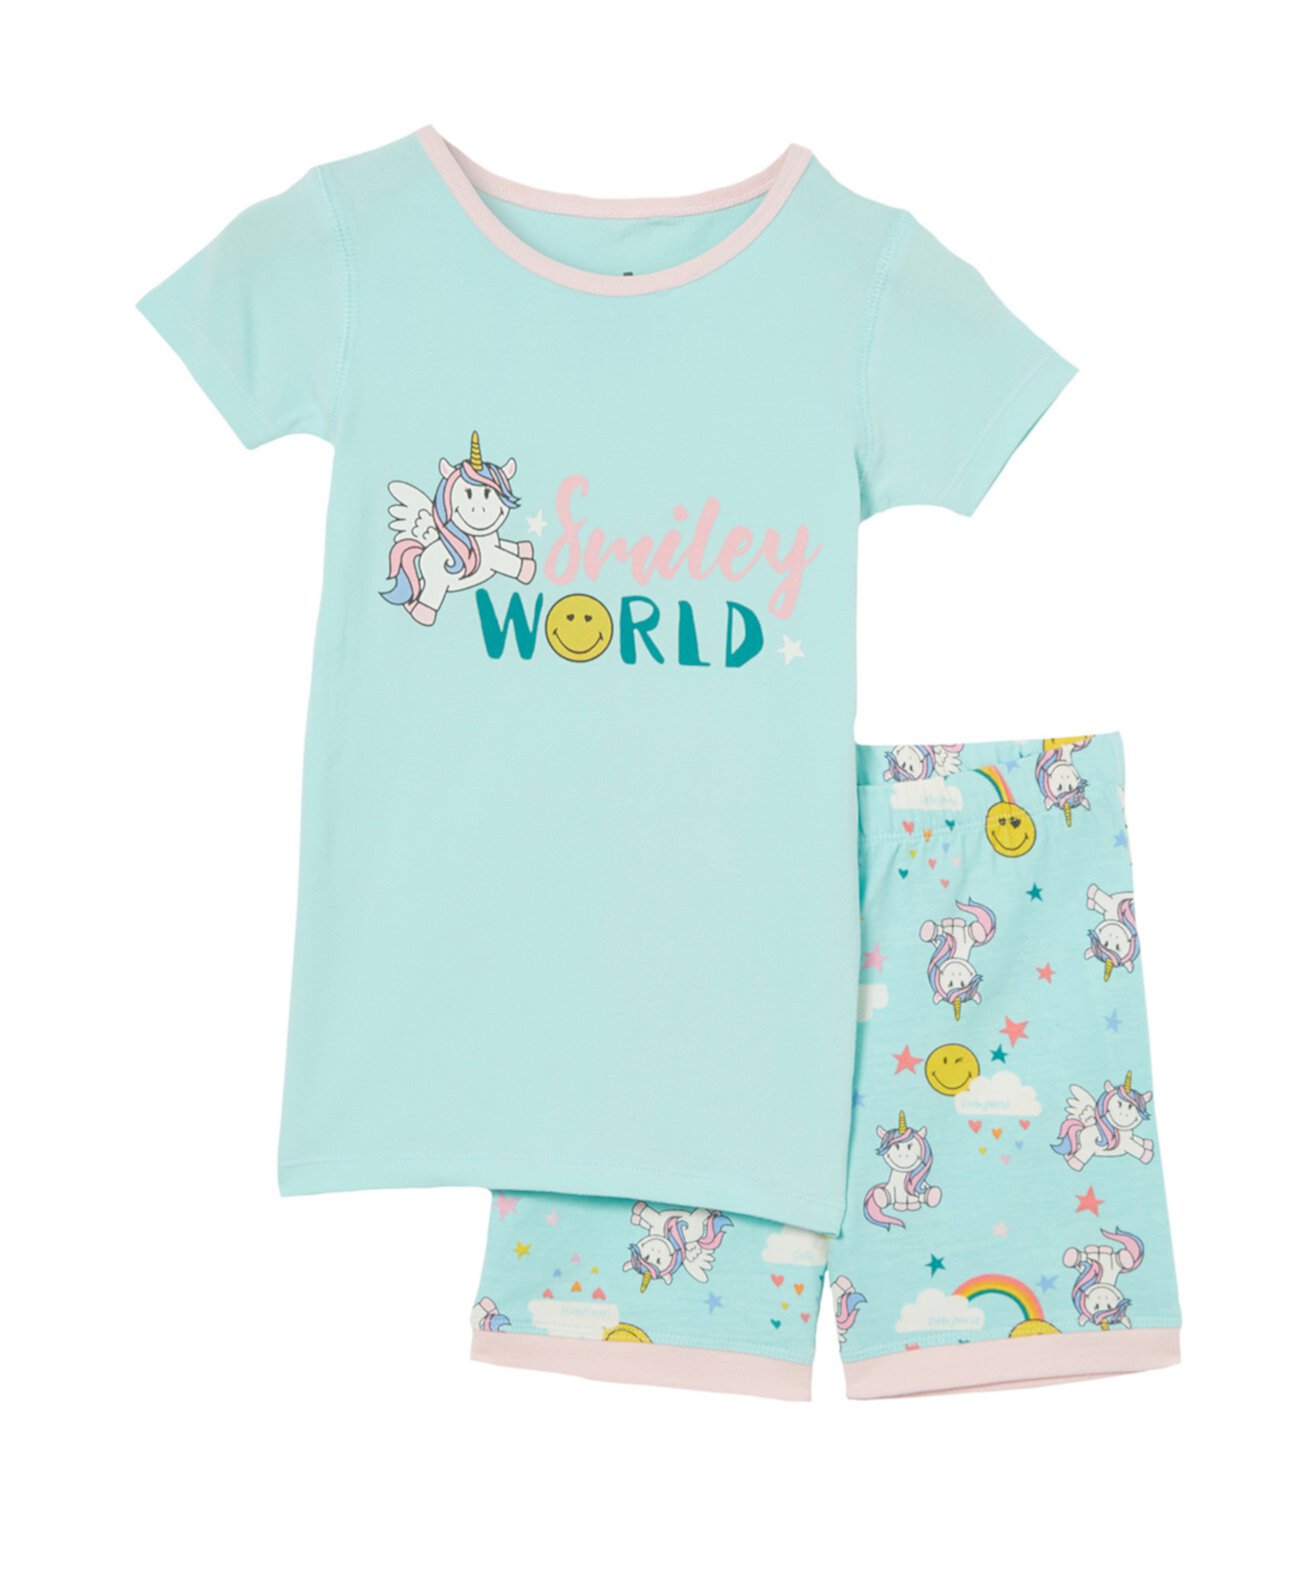 Лицензионный пижамный комплект с короткими рукавами Little Girls Nikki COTTON ON